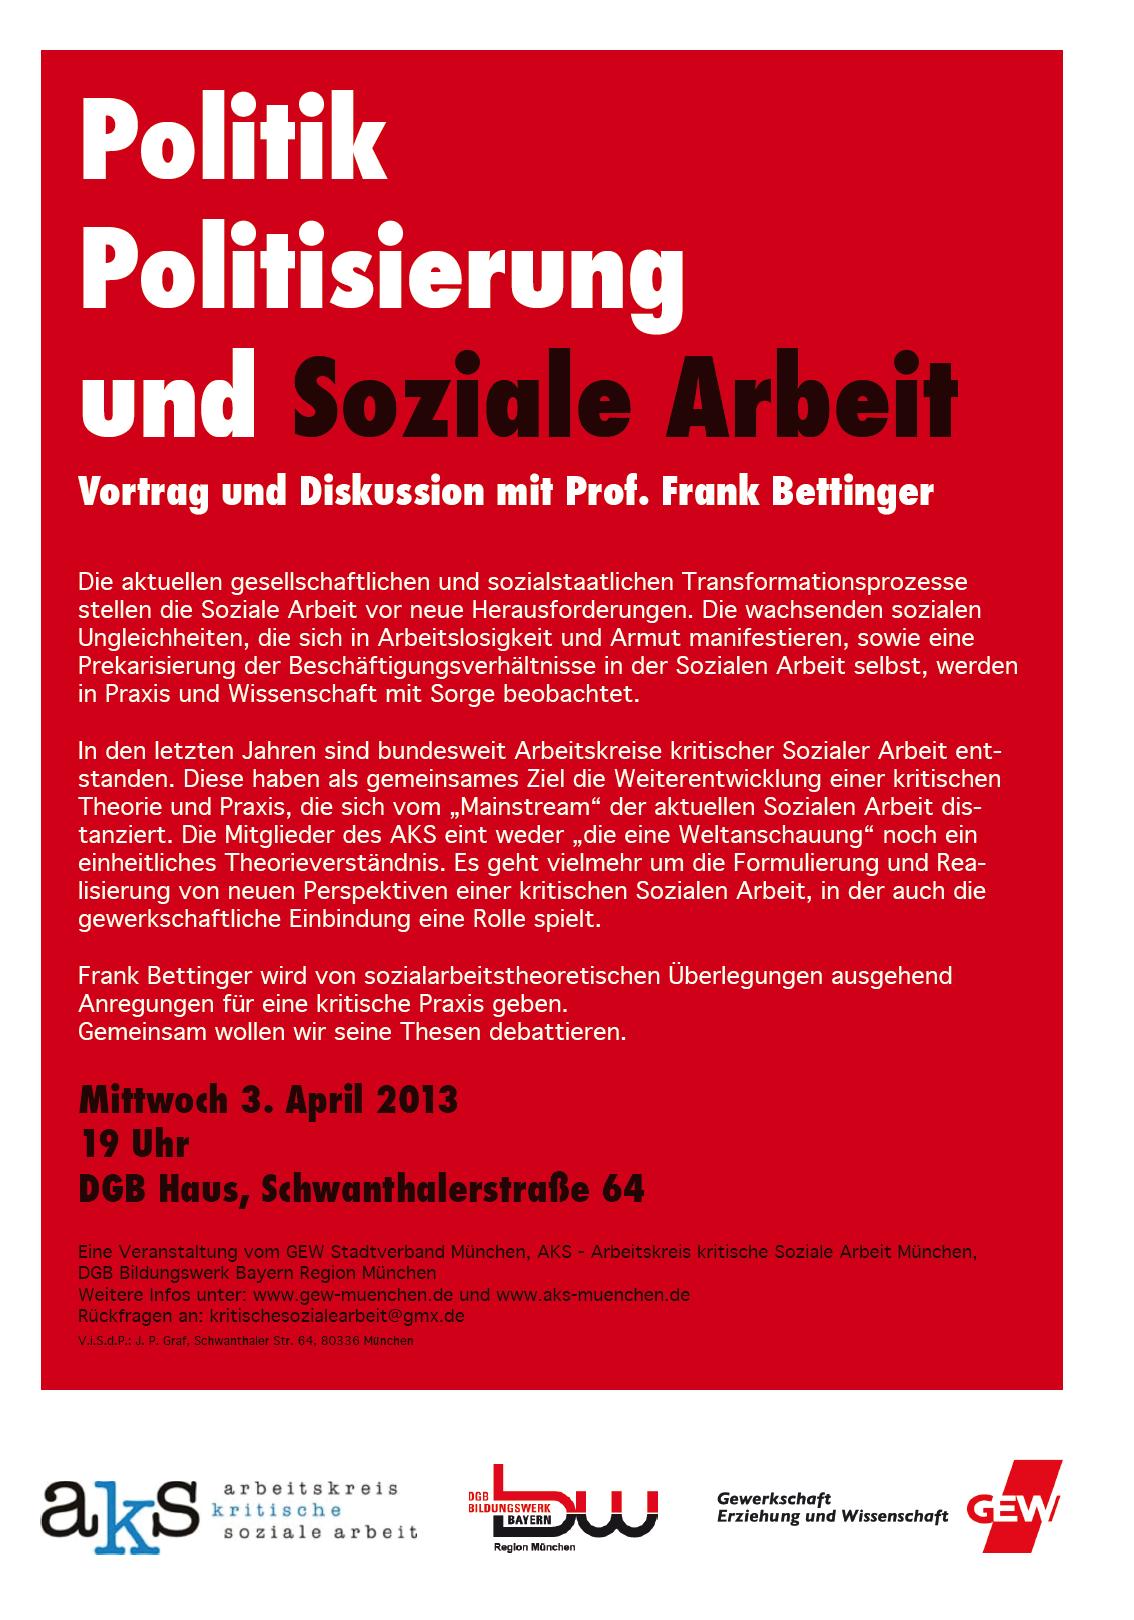  - Politik-Politisierung-und-Soziale-Arbeit-Prof-Bettinger-03.04.2013-AKS-GEW-DGB-München